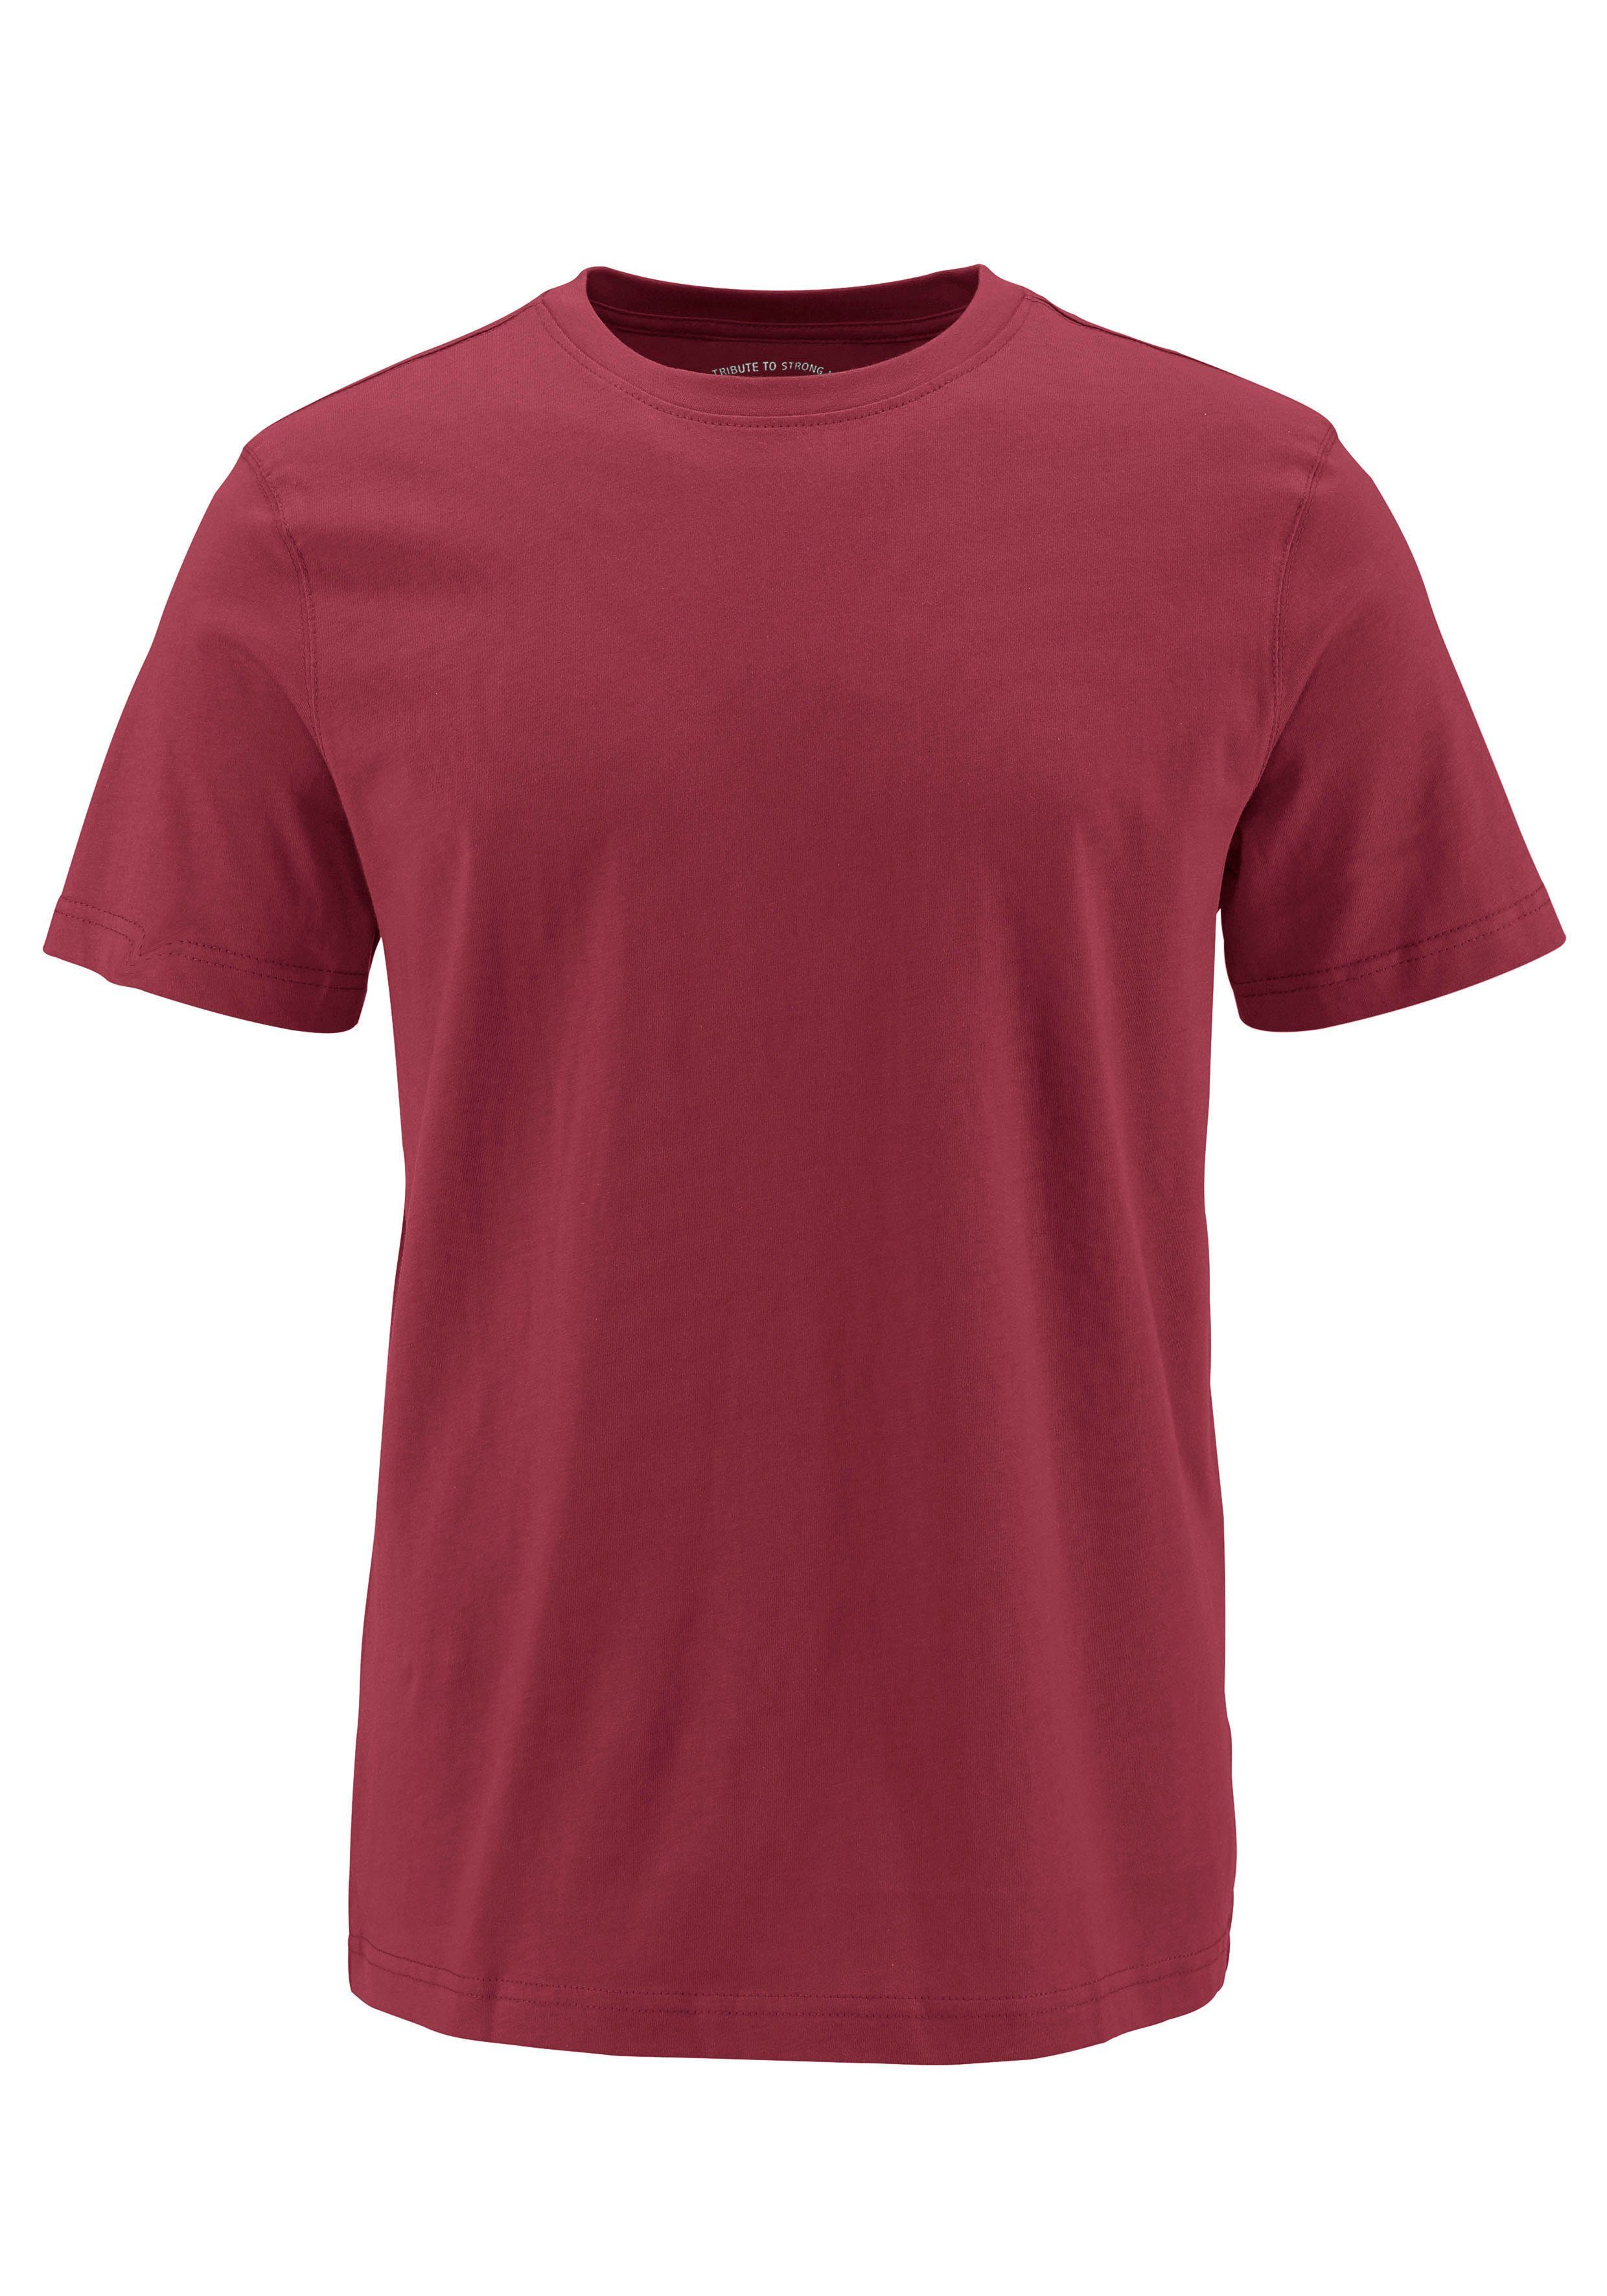 Unterzieh- perfekt 3-tlg., Man's marine, als grau-meliert 3er-Pack) (Packung, rot, World T-Shirt T-shirt